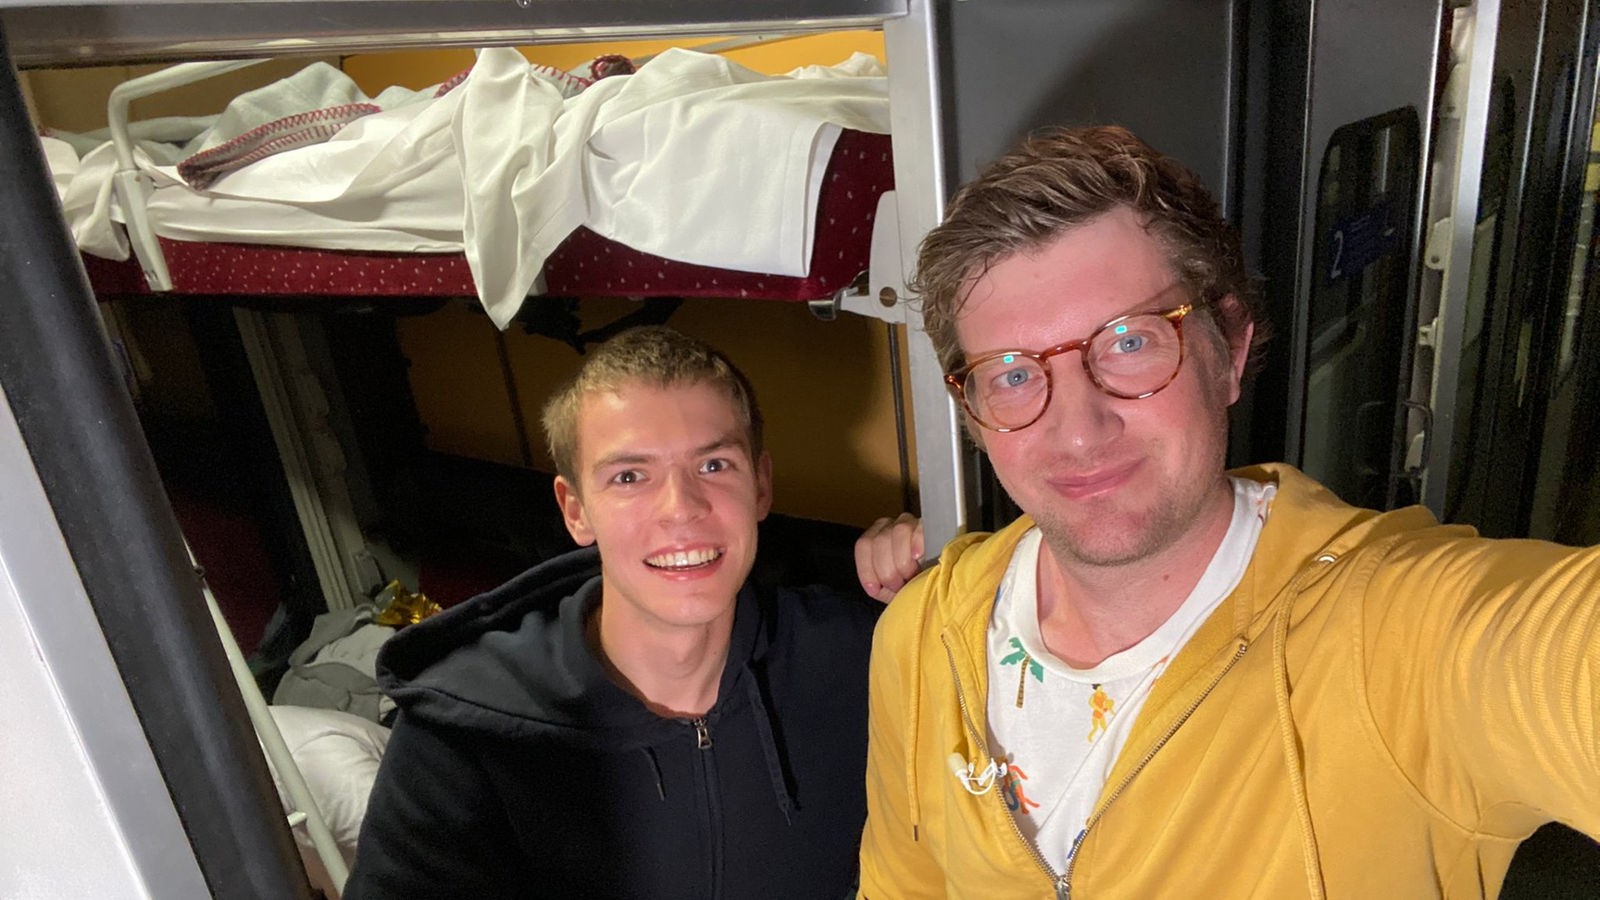 Selfie von Robert mit Mitreisendem in Schlafabteil des Nachtzugs.